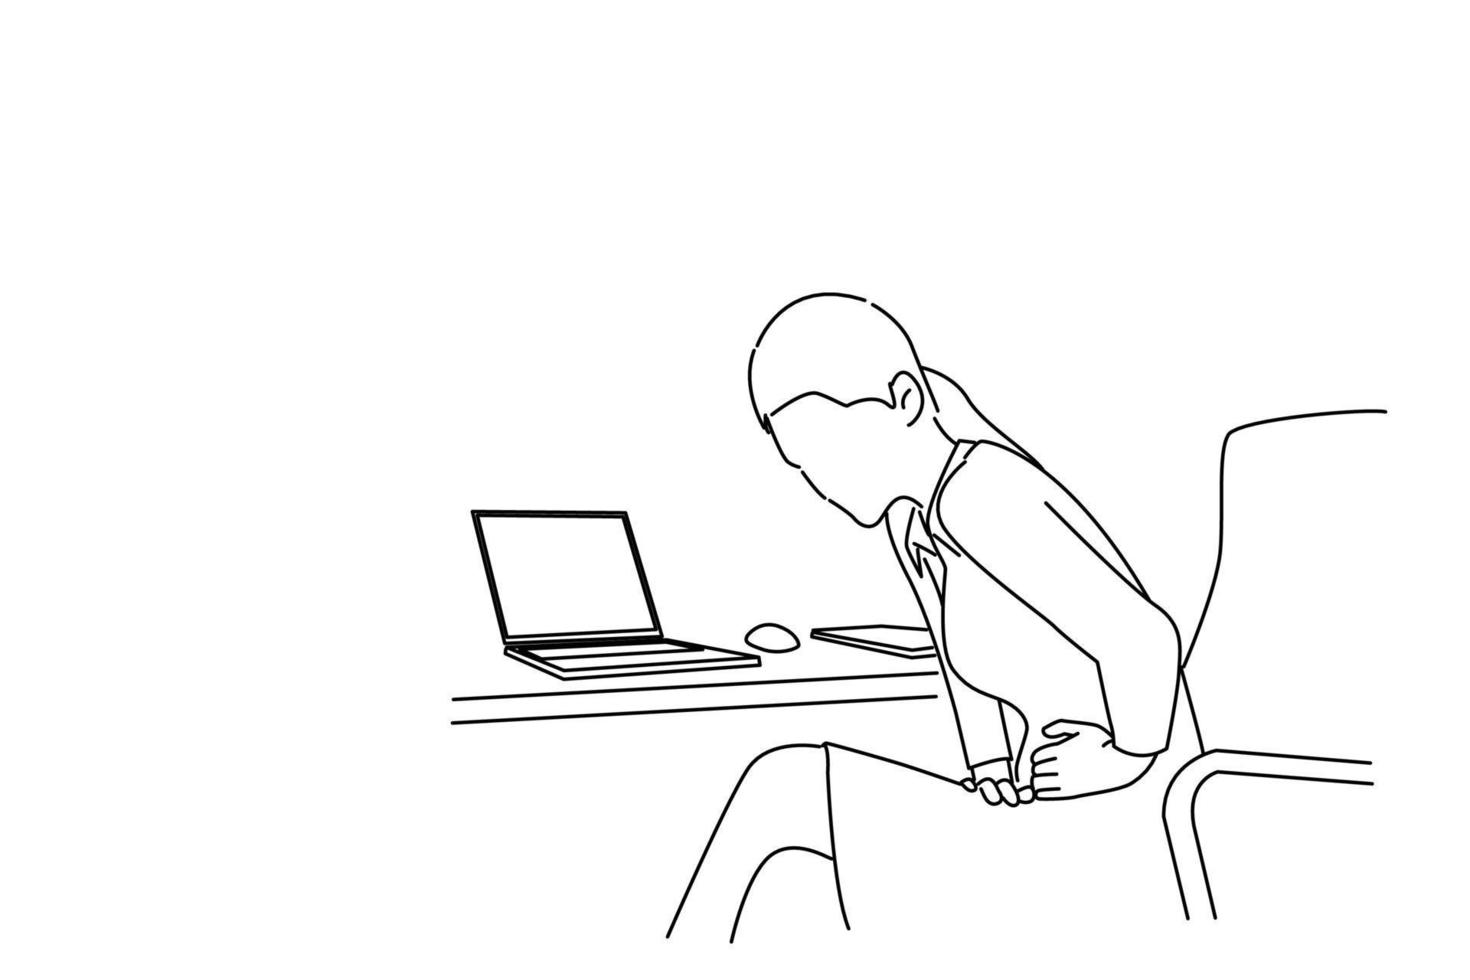 tekening van vrouw manager zittend Bij tafel, buigen, aanraken haar maag, lijden van pijn. schets tekening stijl kunst vector